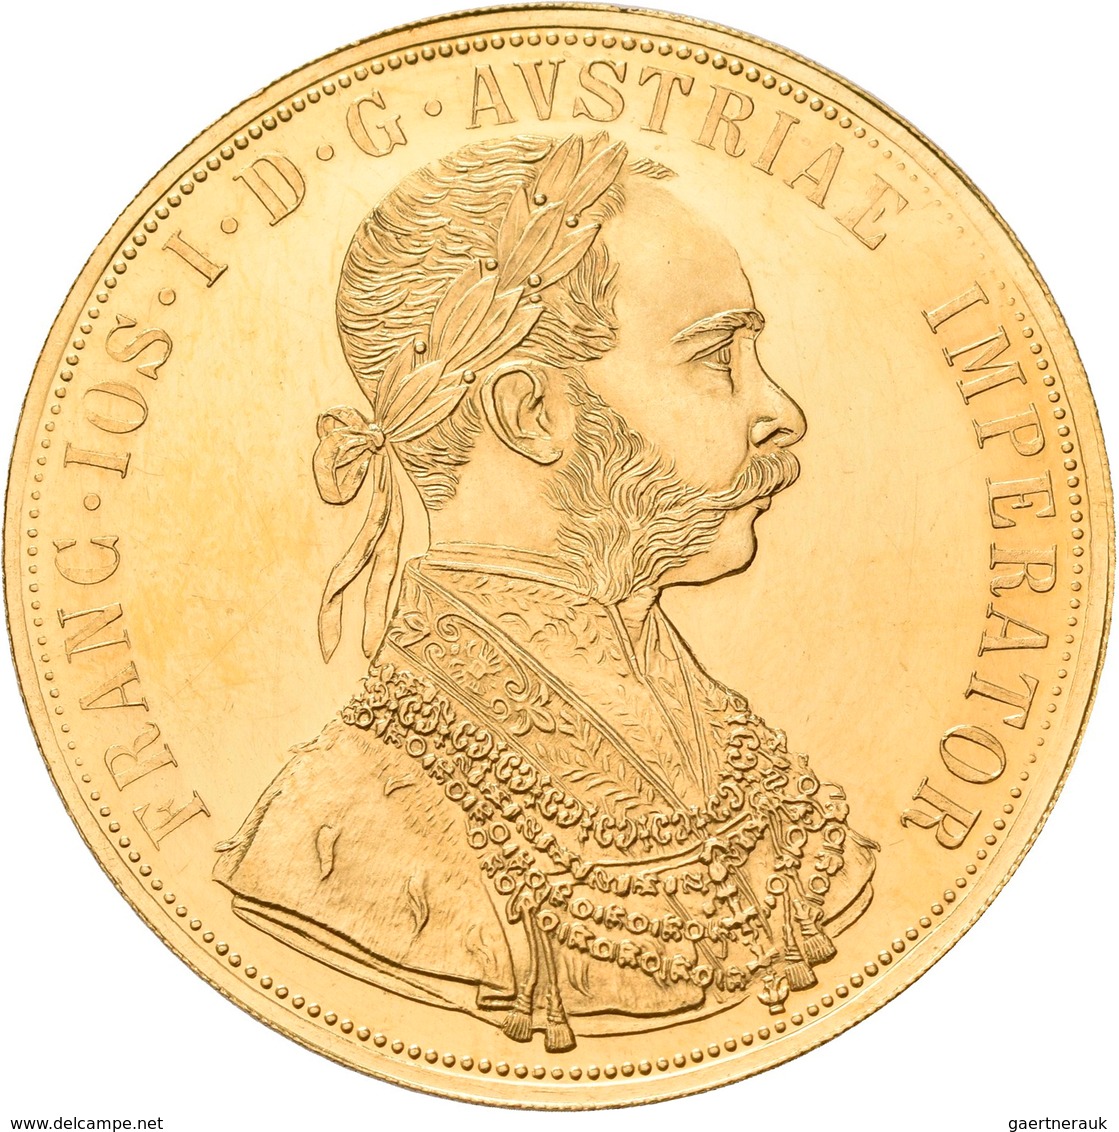 Österreich - Anlagegold: Franz Joseph I. 1848-1916: 4 Dukaten 1915 (NP), Friedberg 488. 13,96 G, 986 - Austria